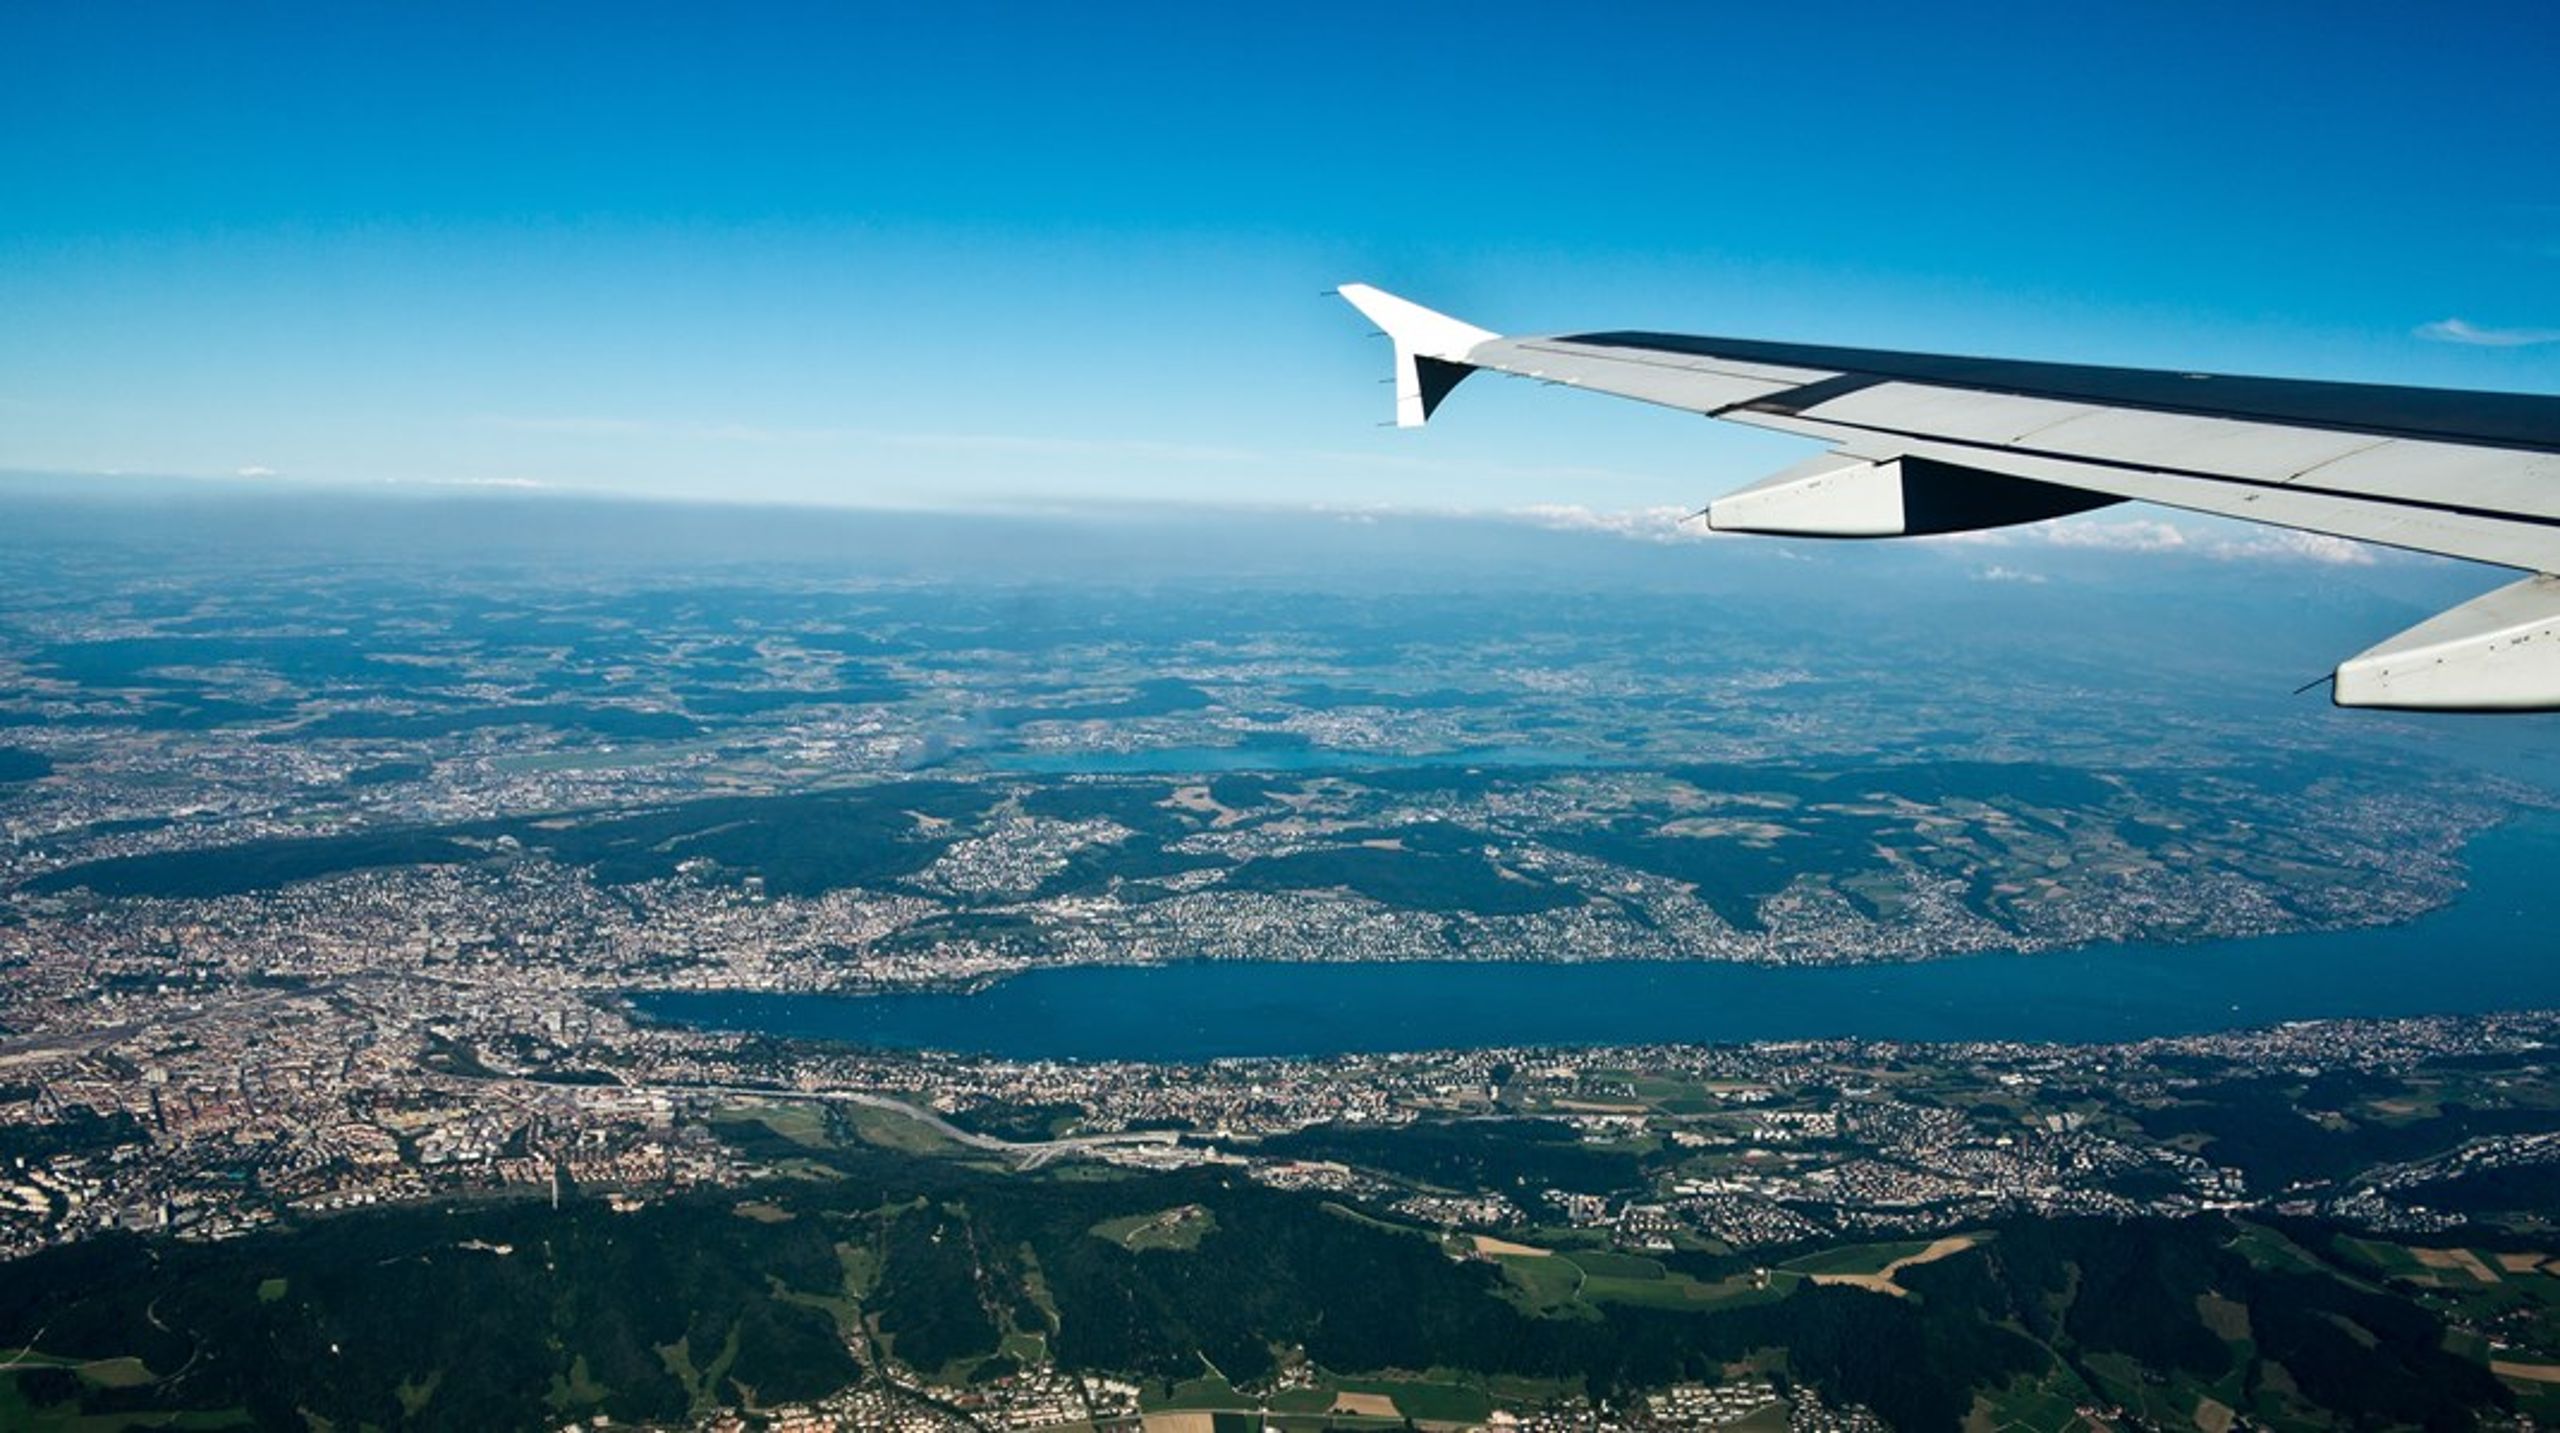 Otte folketingsmedlemmer flyver mandag til Zürich og tager toget videre til Bern for at studere erhvervsskoler i Schweiz.